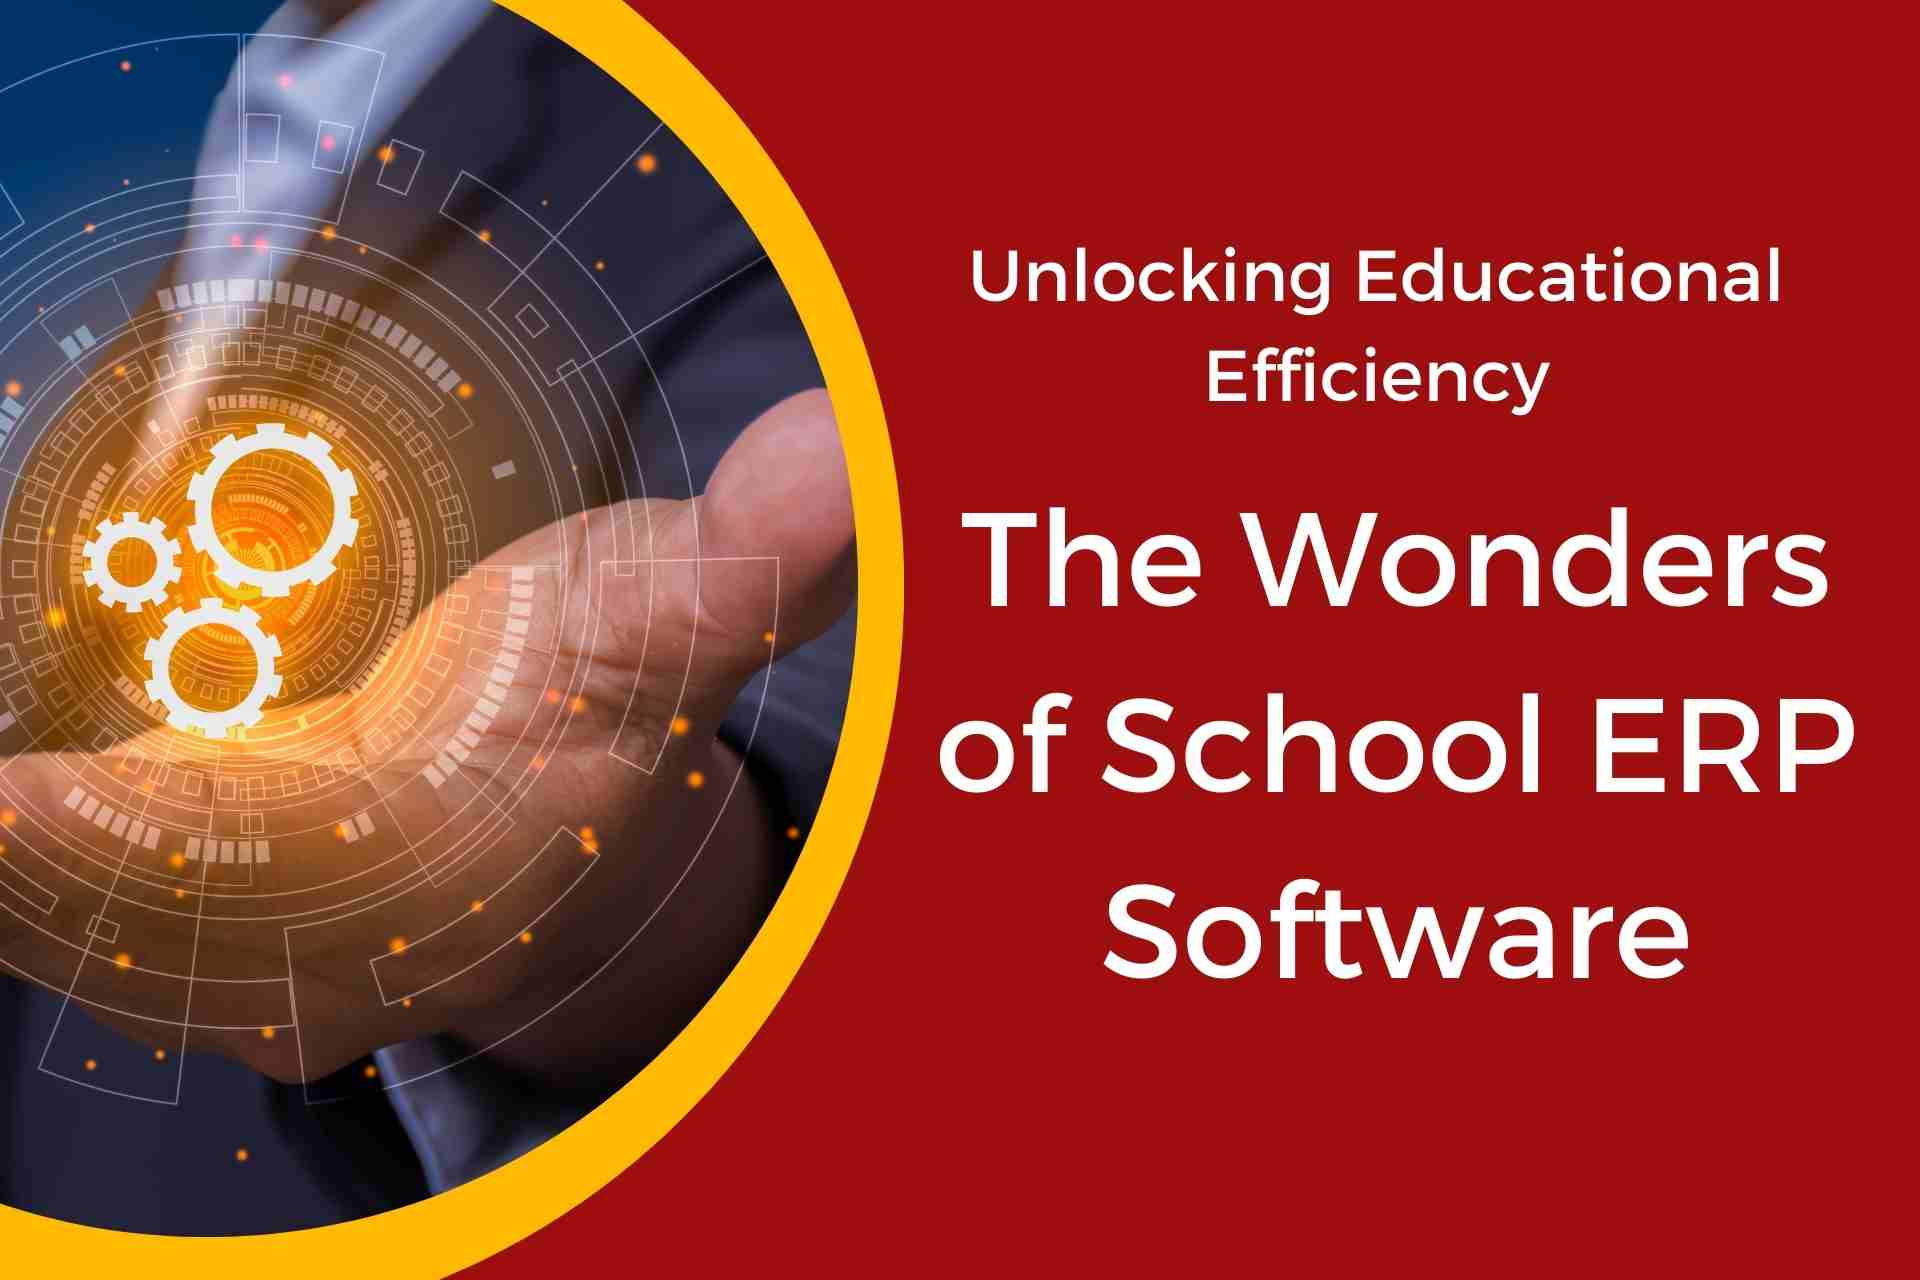 Unlocking Educational Efficiency The Wonders of School ERP Software